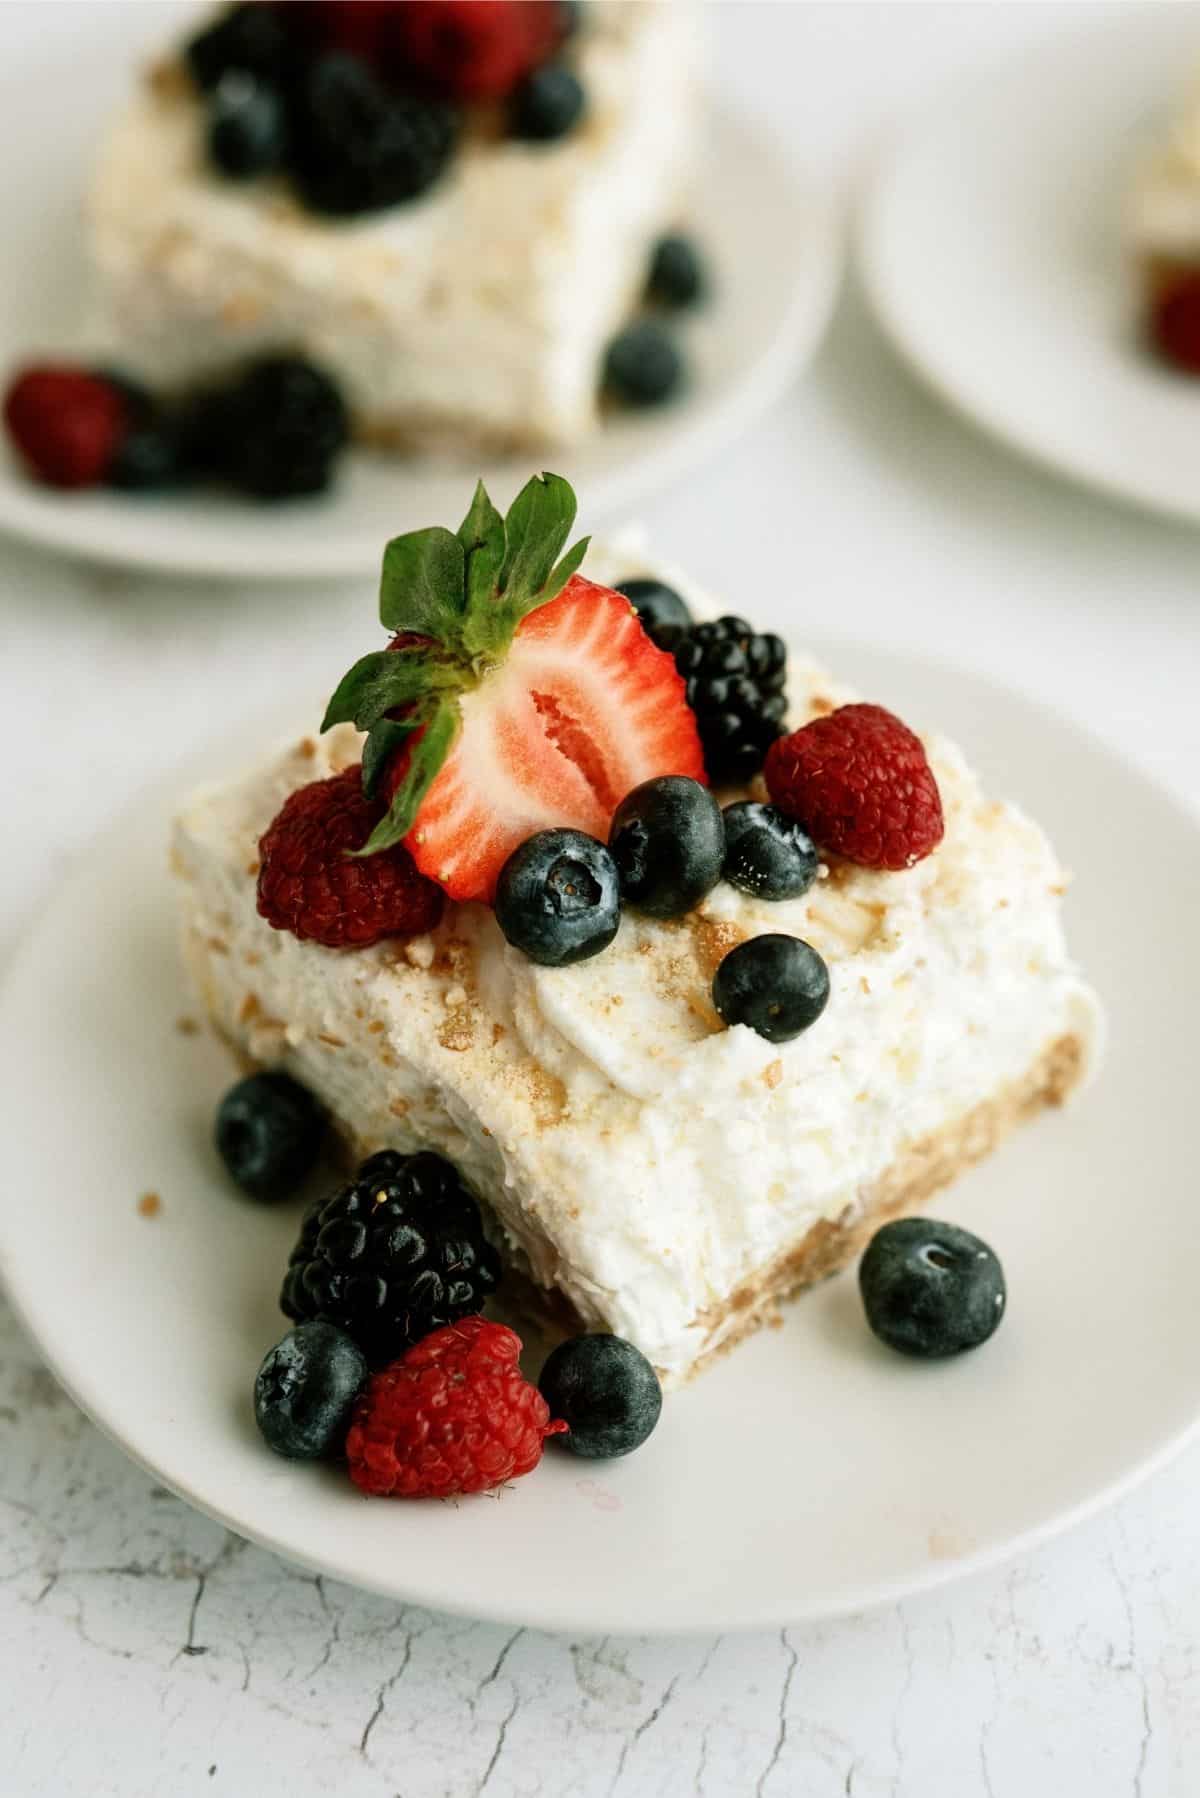 https://www.sixsistersstuff.com/wp-content/uploads/2014/04/Fluffy-Cream-Cheese-Dessert-1.jpg